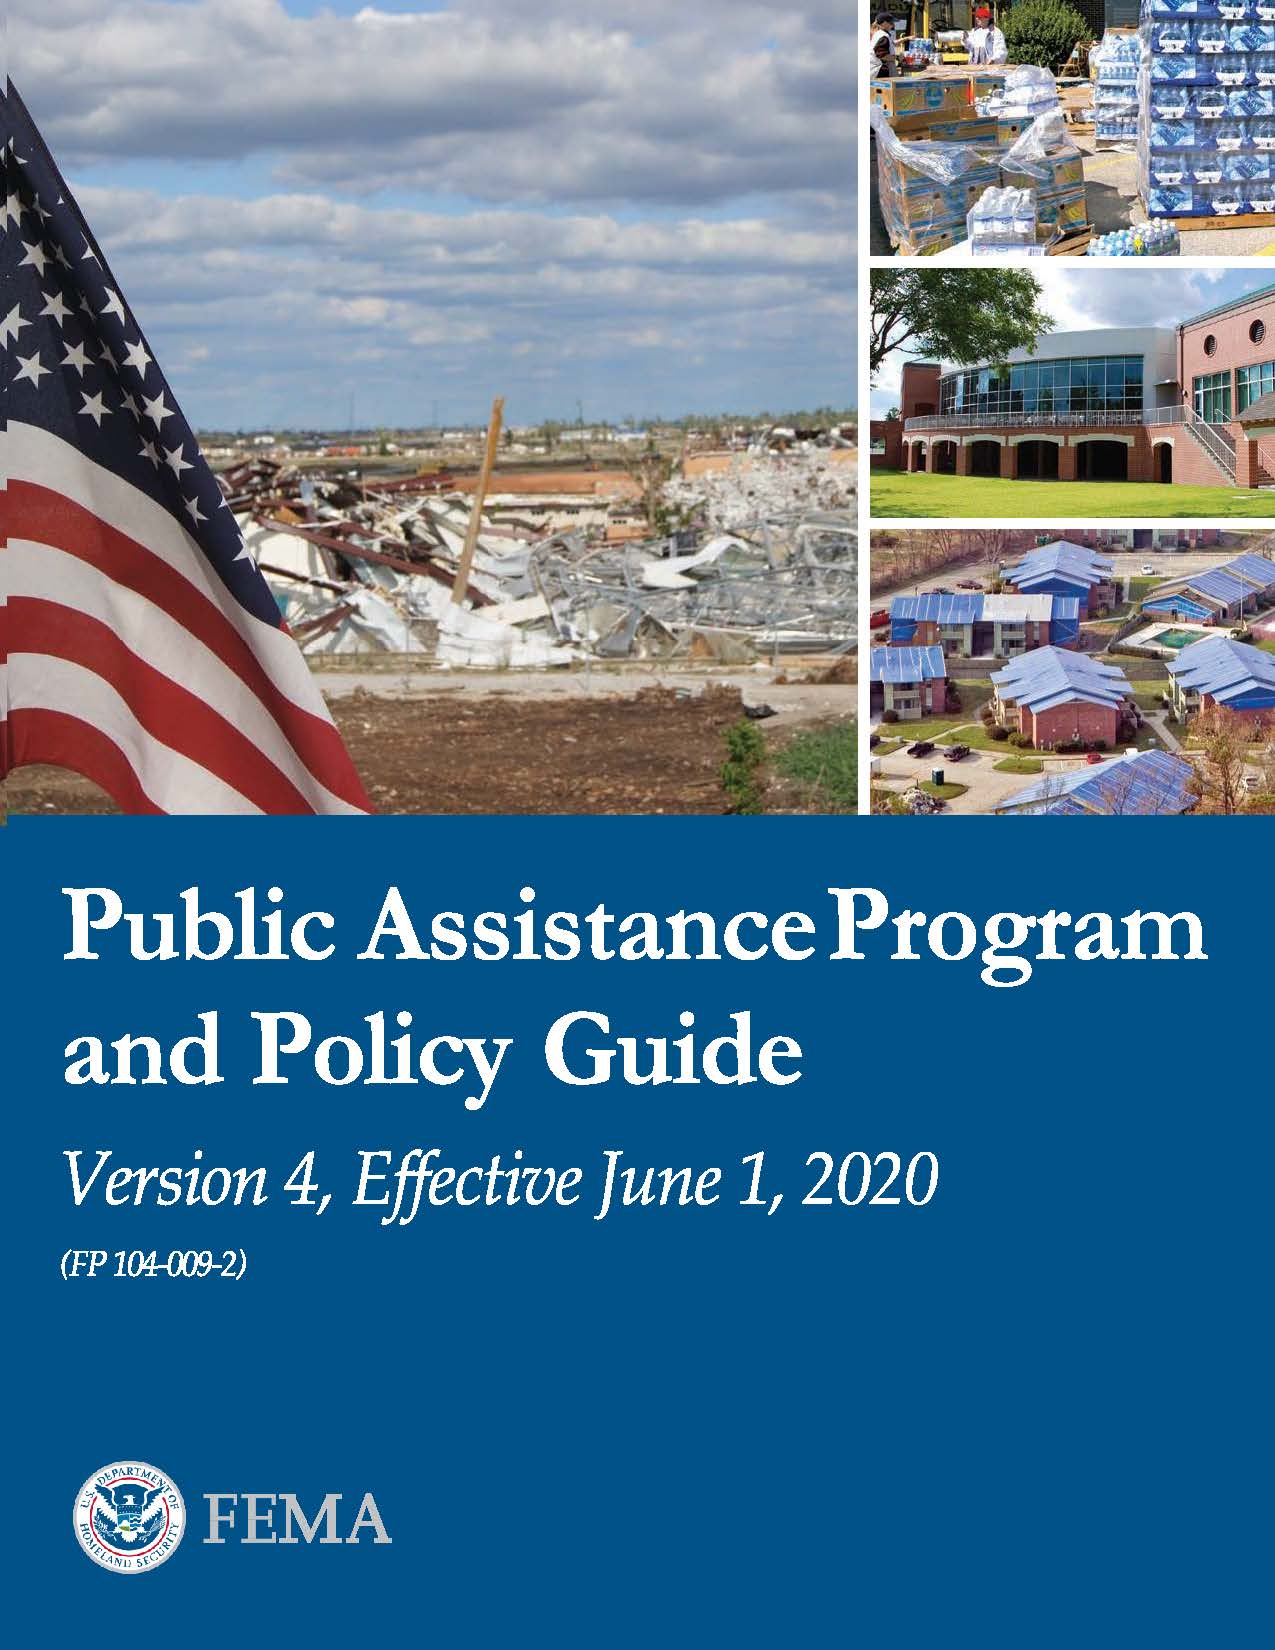 Guía de políticas del programa de asistencia pública de FEMA.